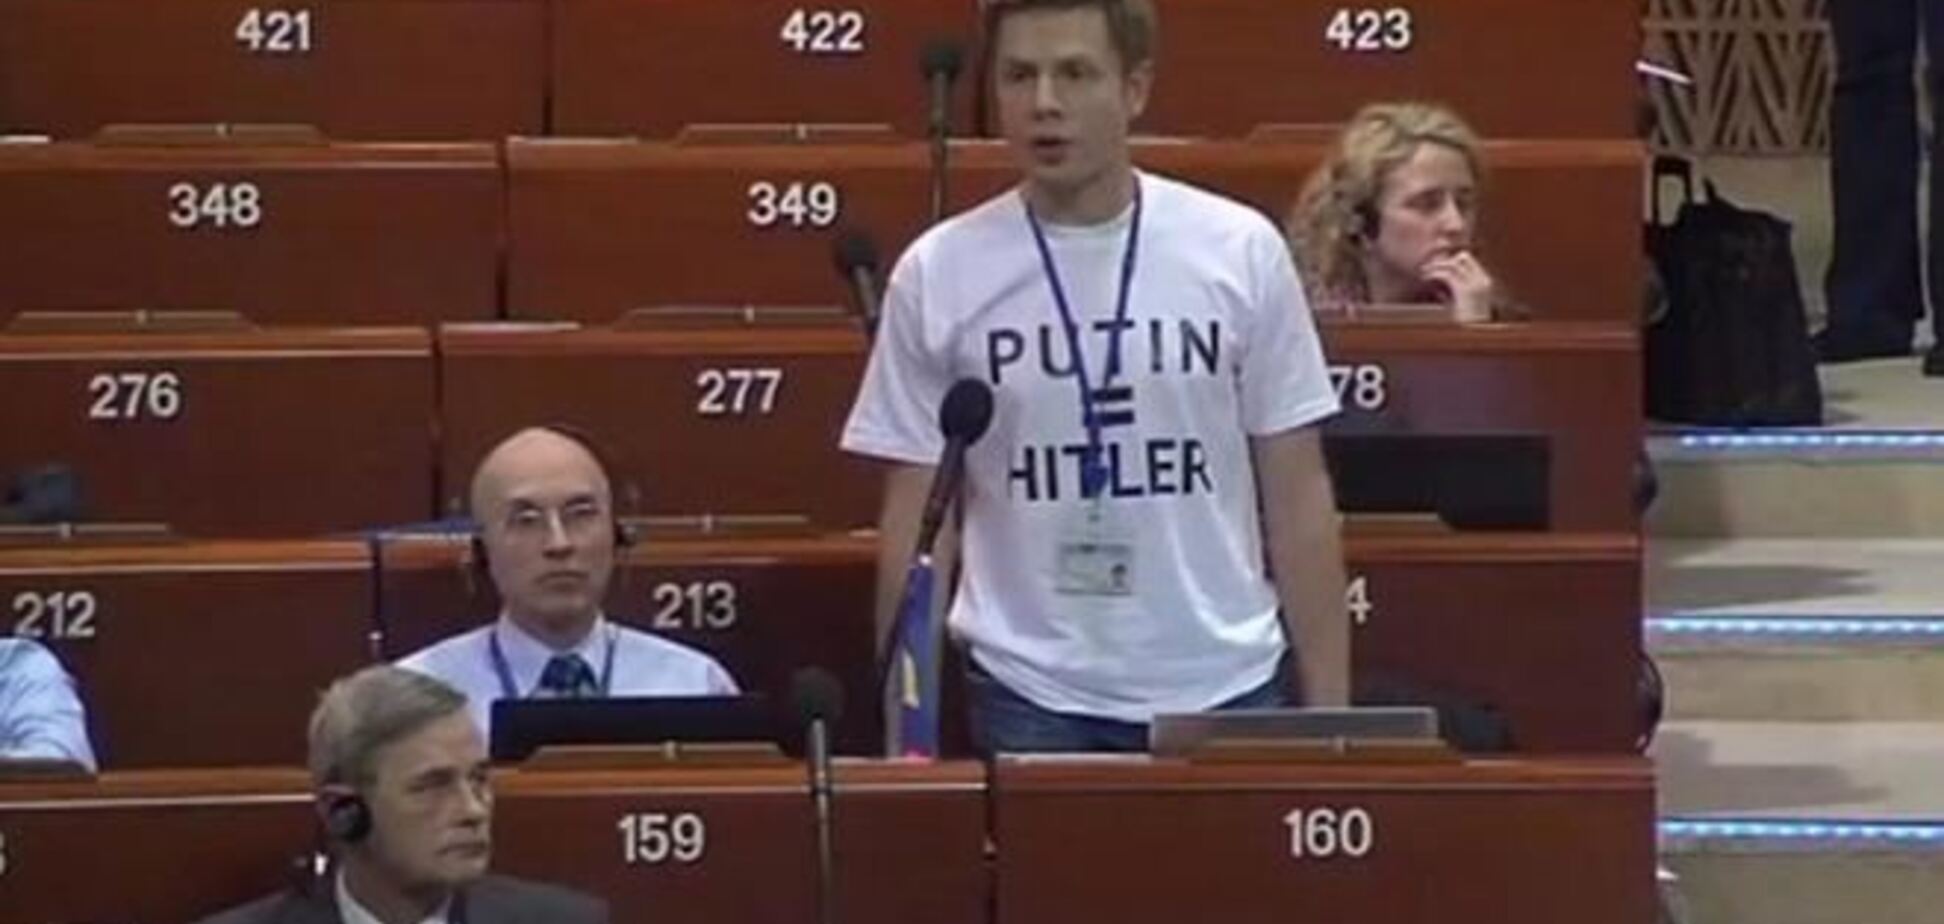 У Раді Європи спалахнув скандал через футболки українського делегата 'PUTIN = HITLER'